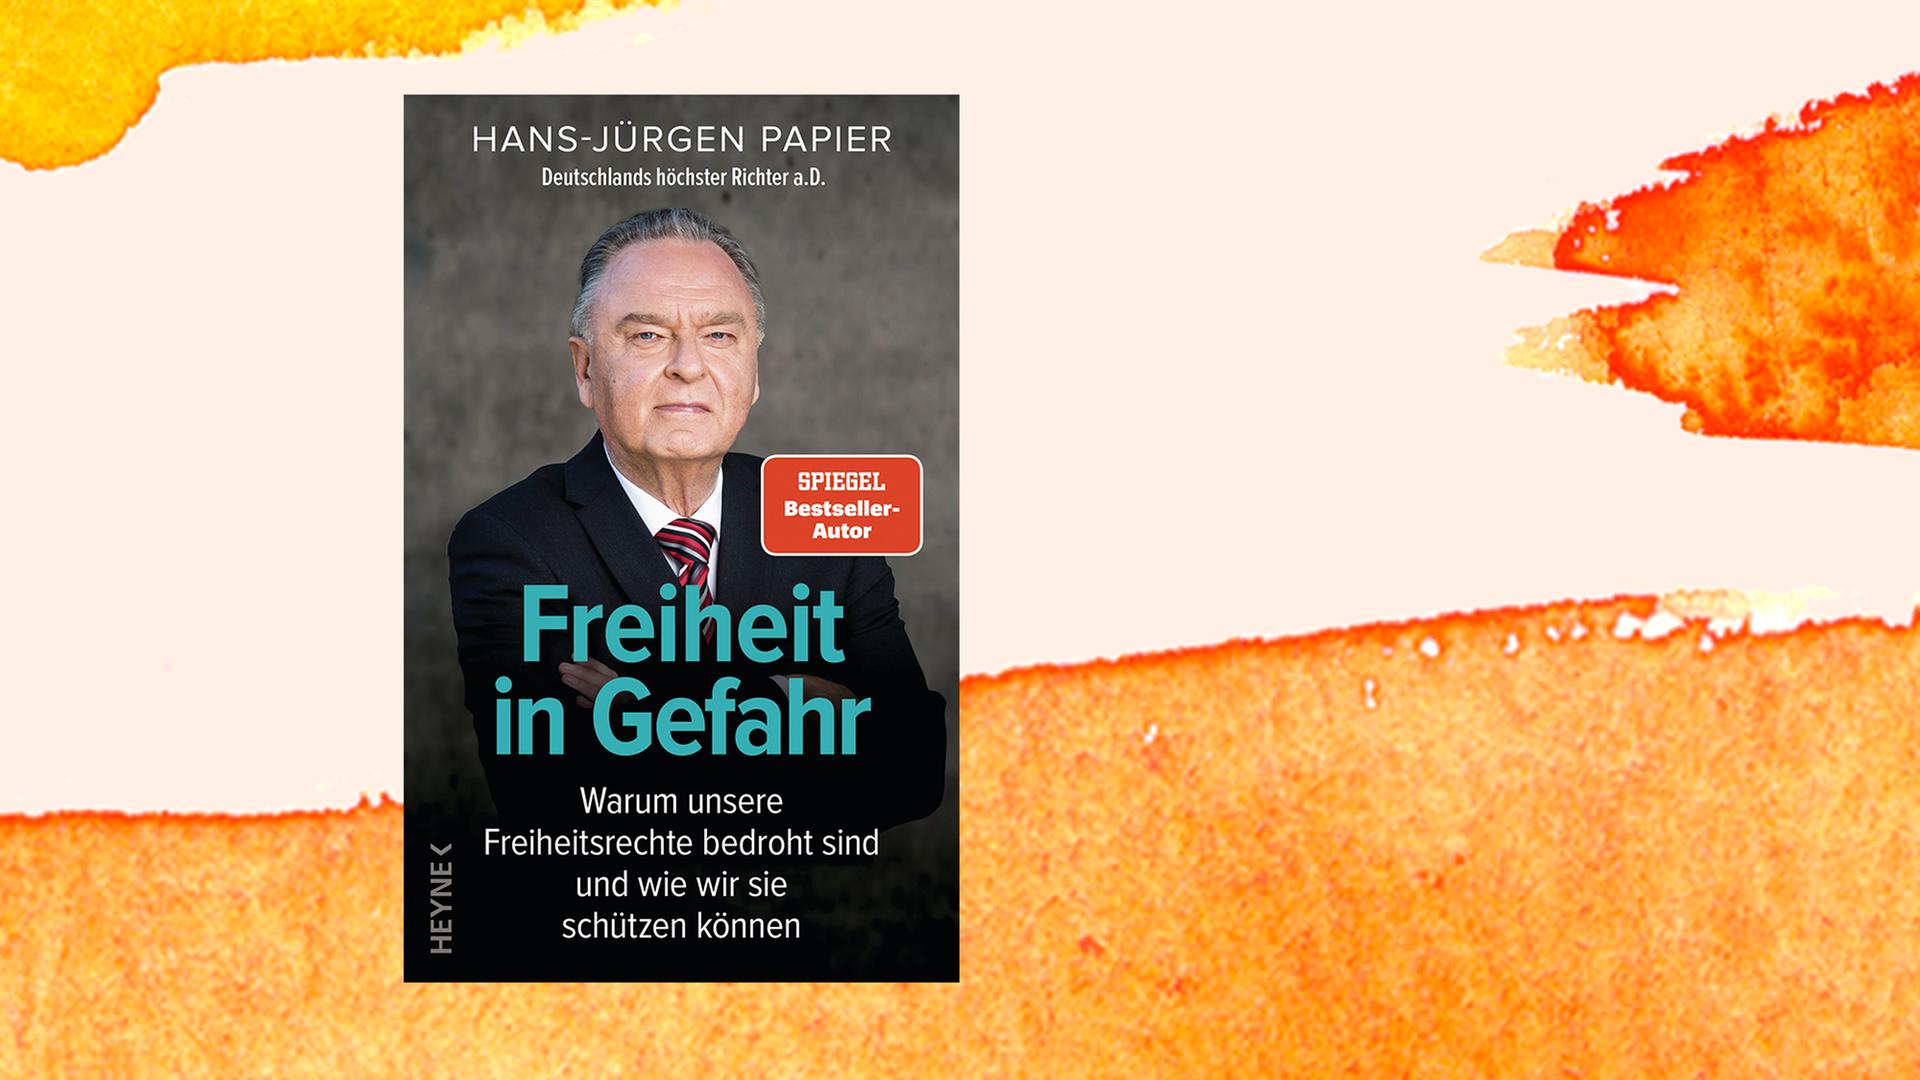 Buchcover von Hans-Jürgen Papier: "Freiheit in Gefahr. Warum unsere Freiheitsrechte bedroht sind und wie wir sie schützen können. Ein Plädoyer von Deutschlands höchstem Richter a.D." Heyne, 2021.